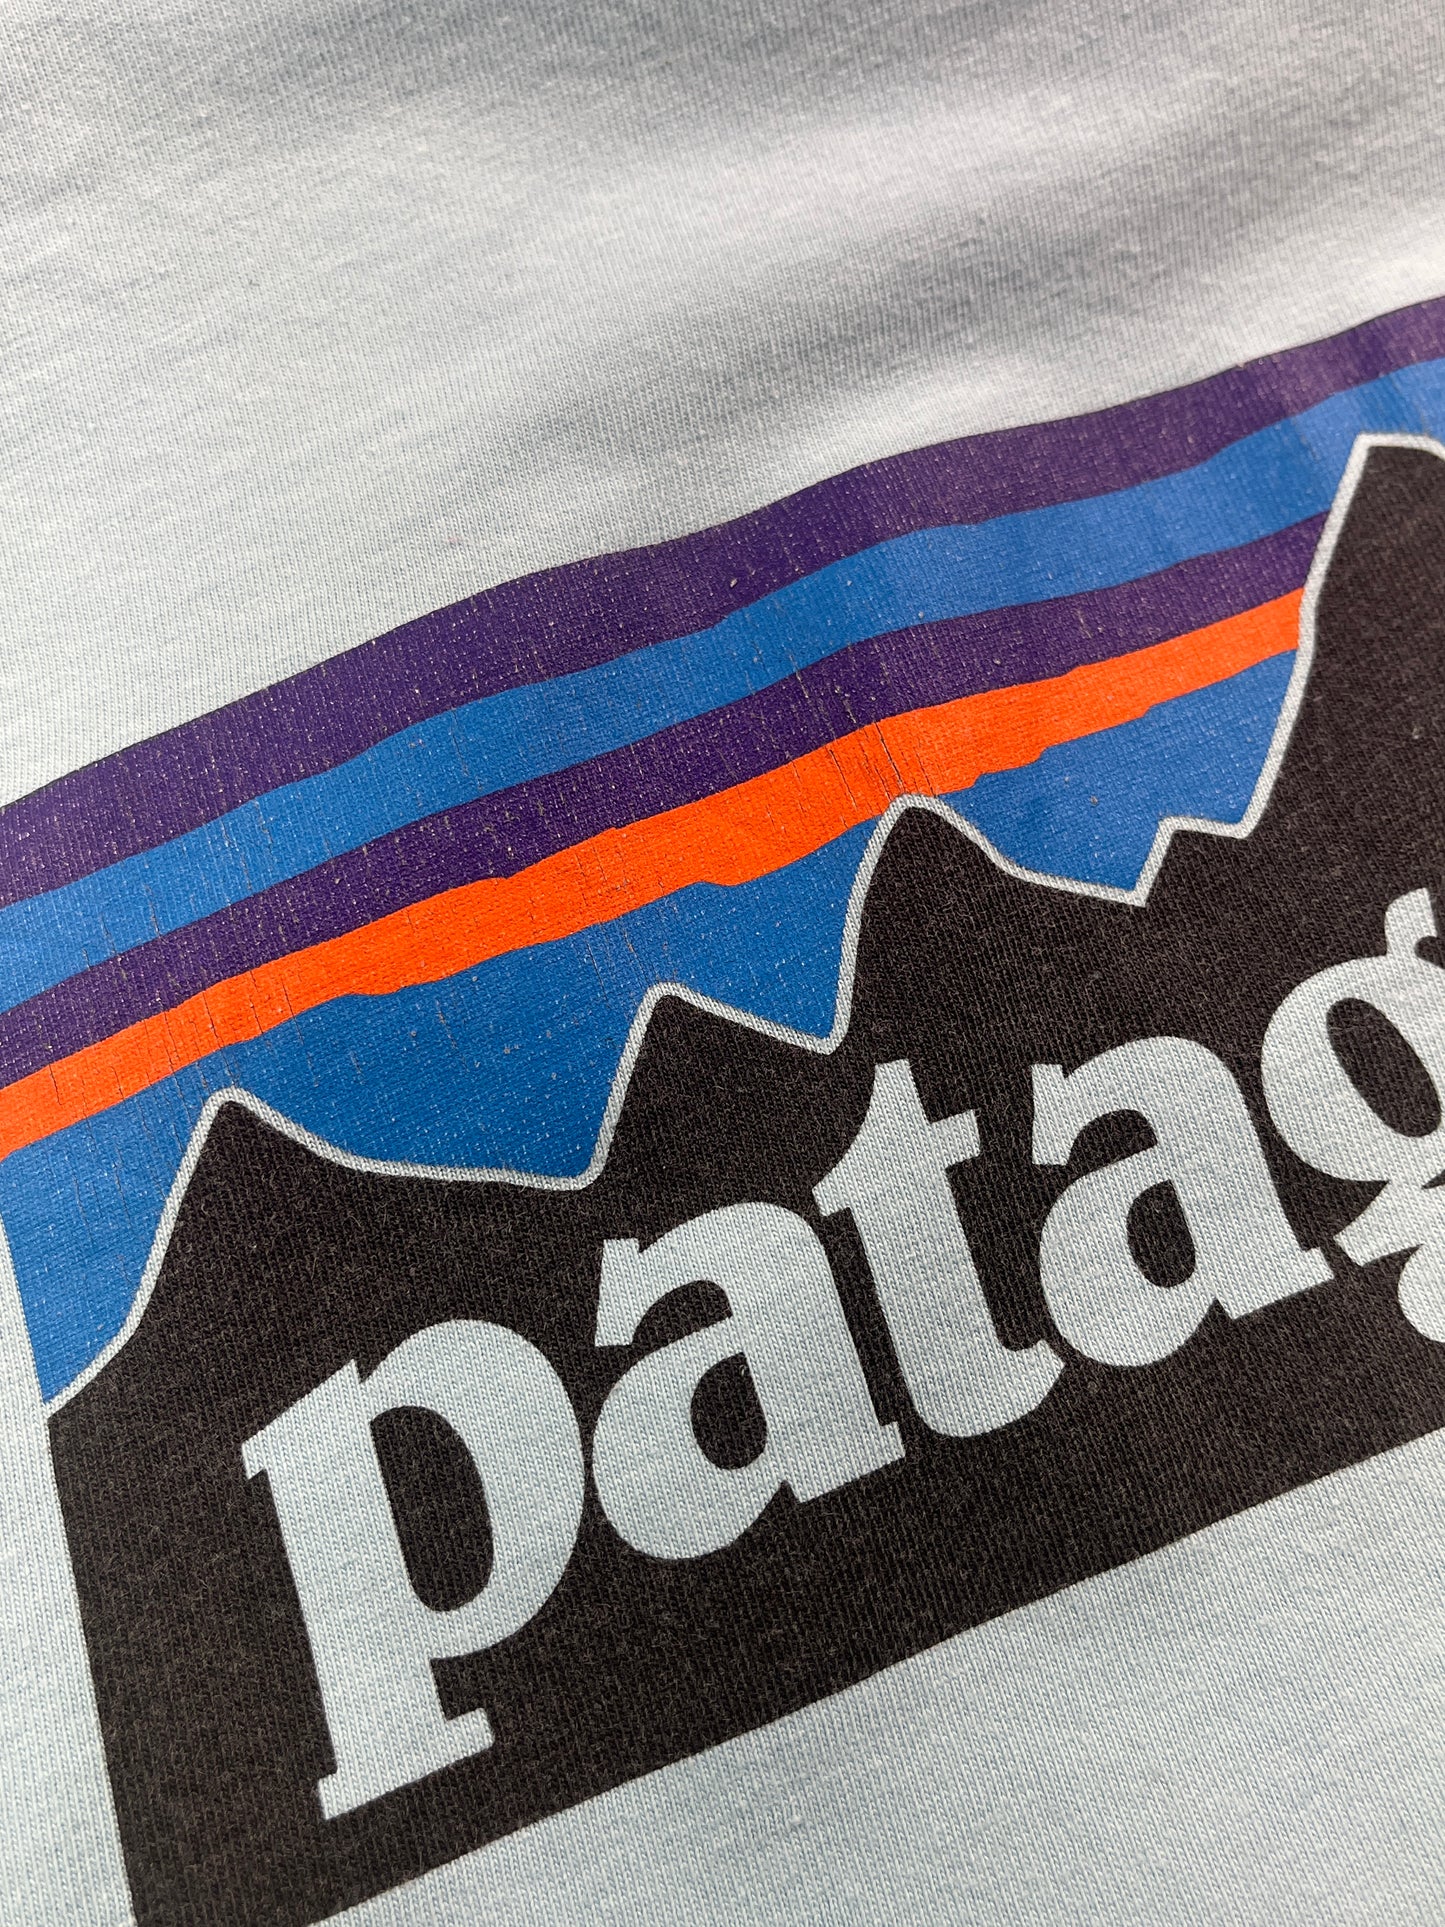 Vintage Patagonia T-Shirt